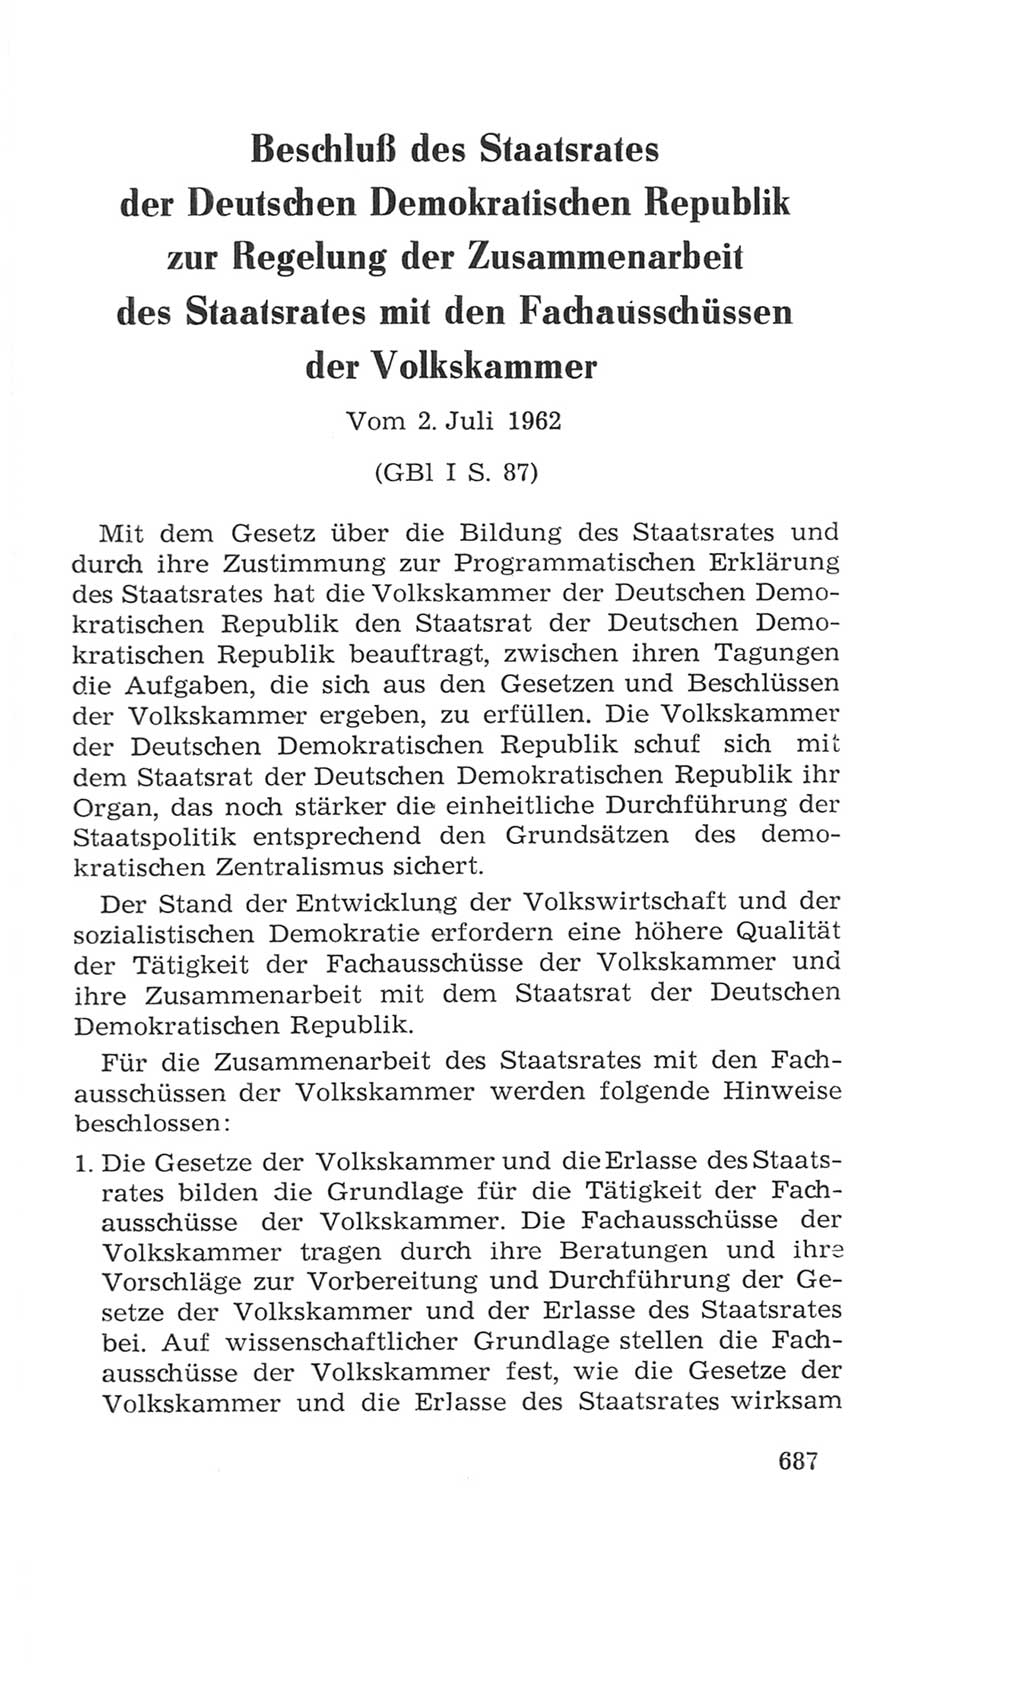 Volkskammer (VK) der Deutschen Demokratischen Republik (DDR), 4. Wahlperiode 1963-1967, Seite 687 (VK. DDR 4. WP. 1963-1967, S. 687)